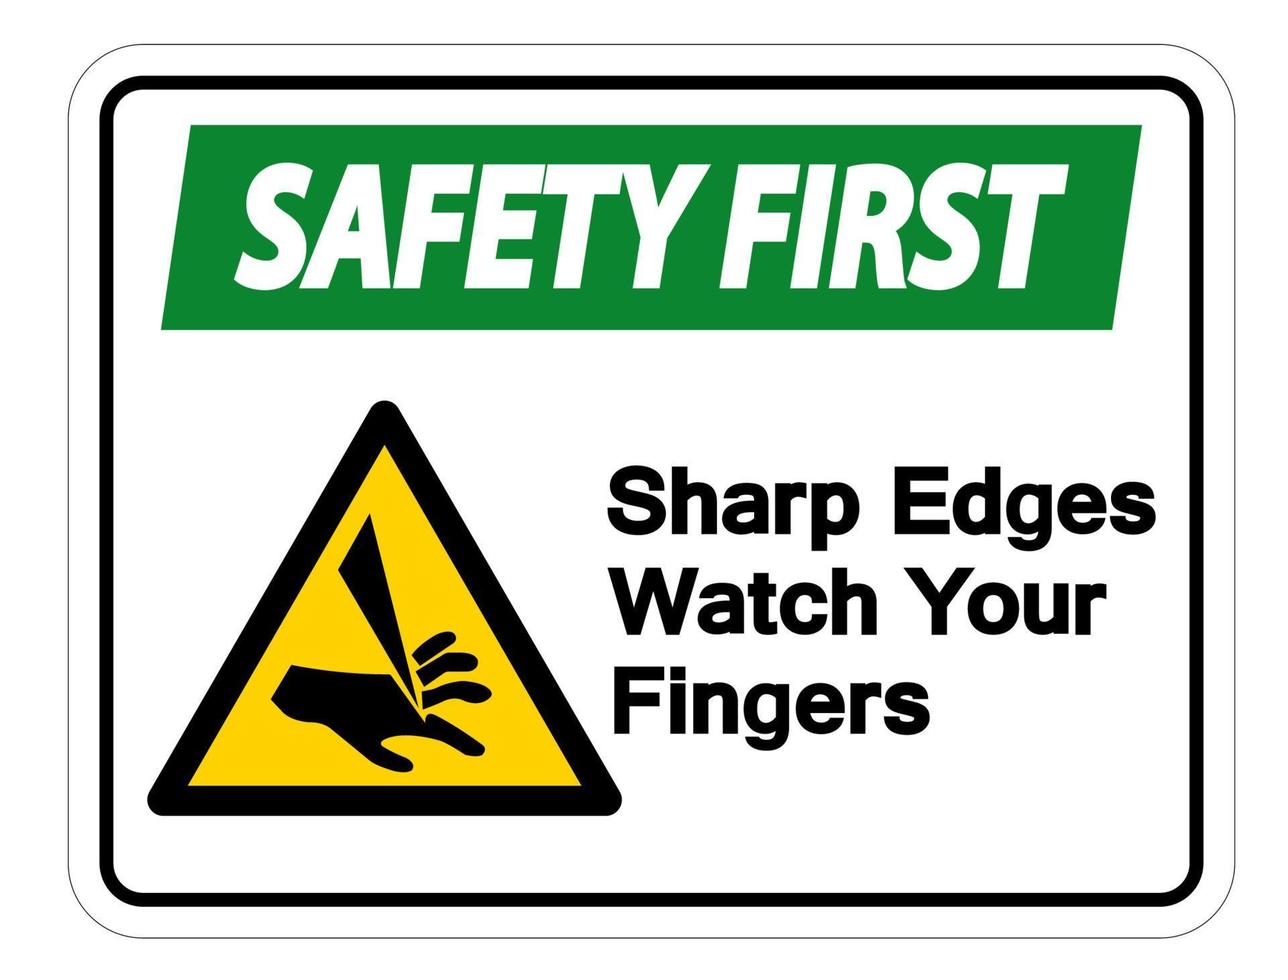 La seguridad es lo primero, los bordes afilados mire el símbolo de los dedos firmar sobre fondo blanco. vector